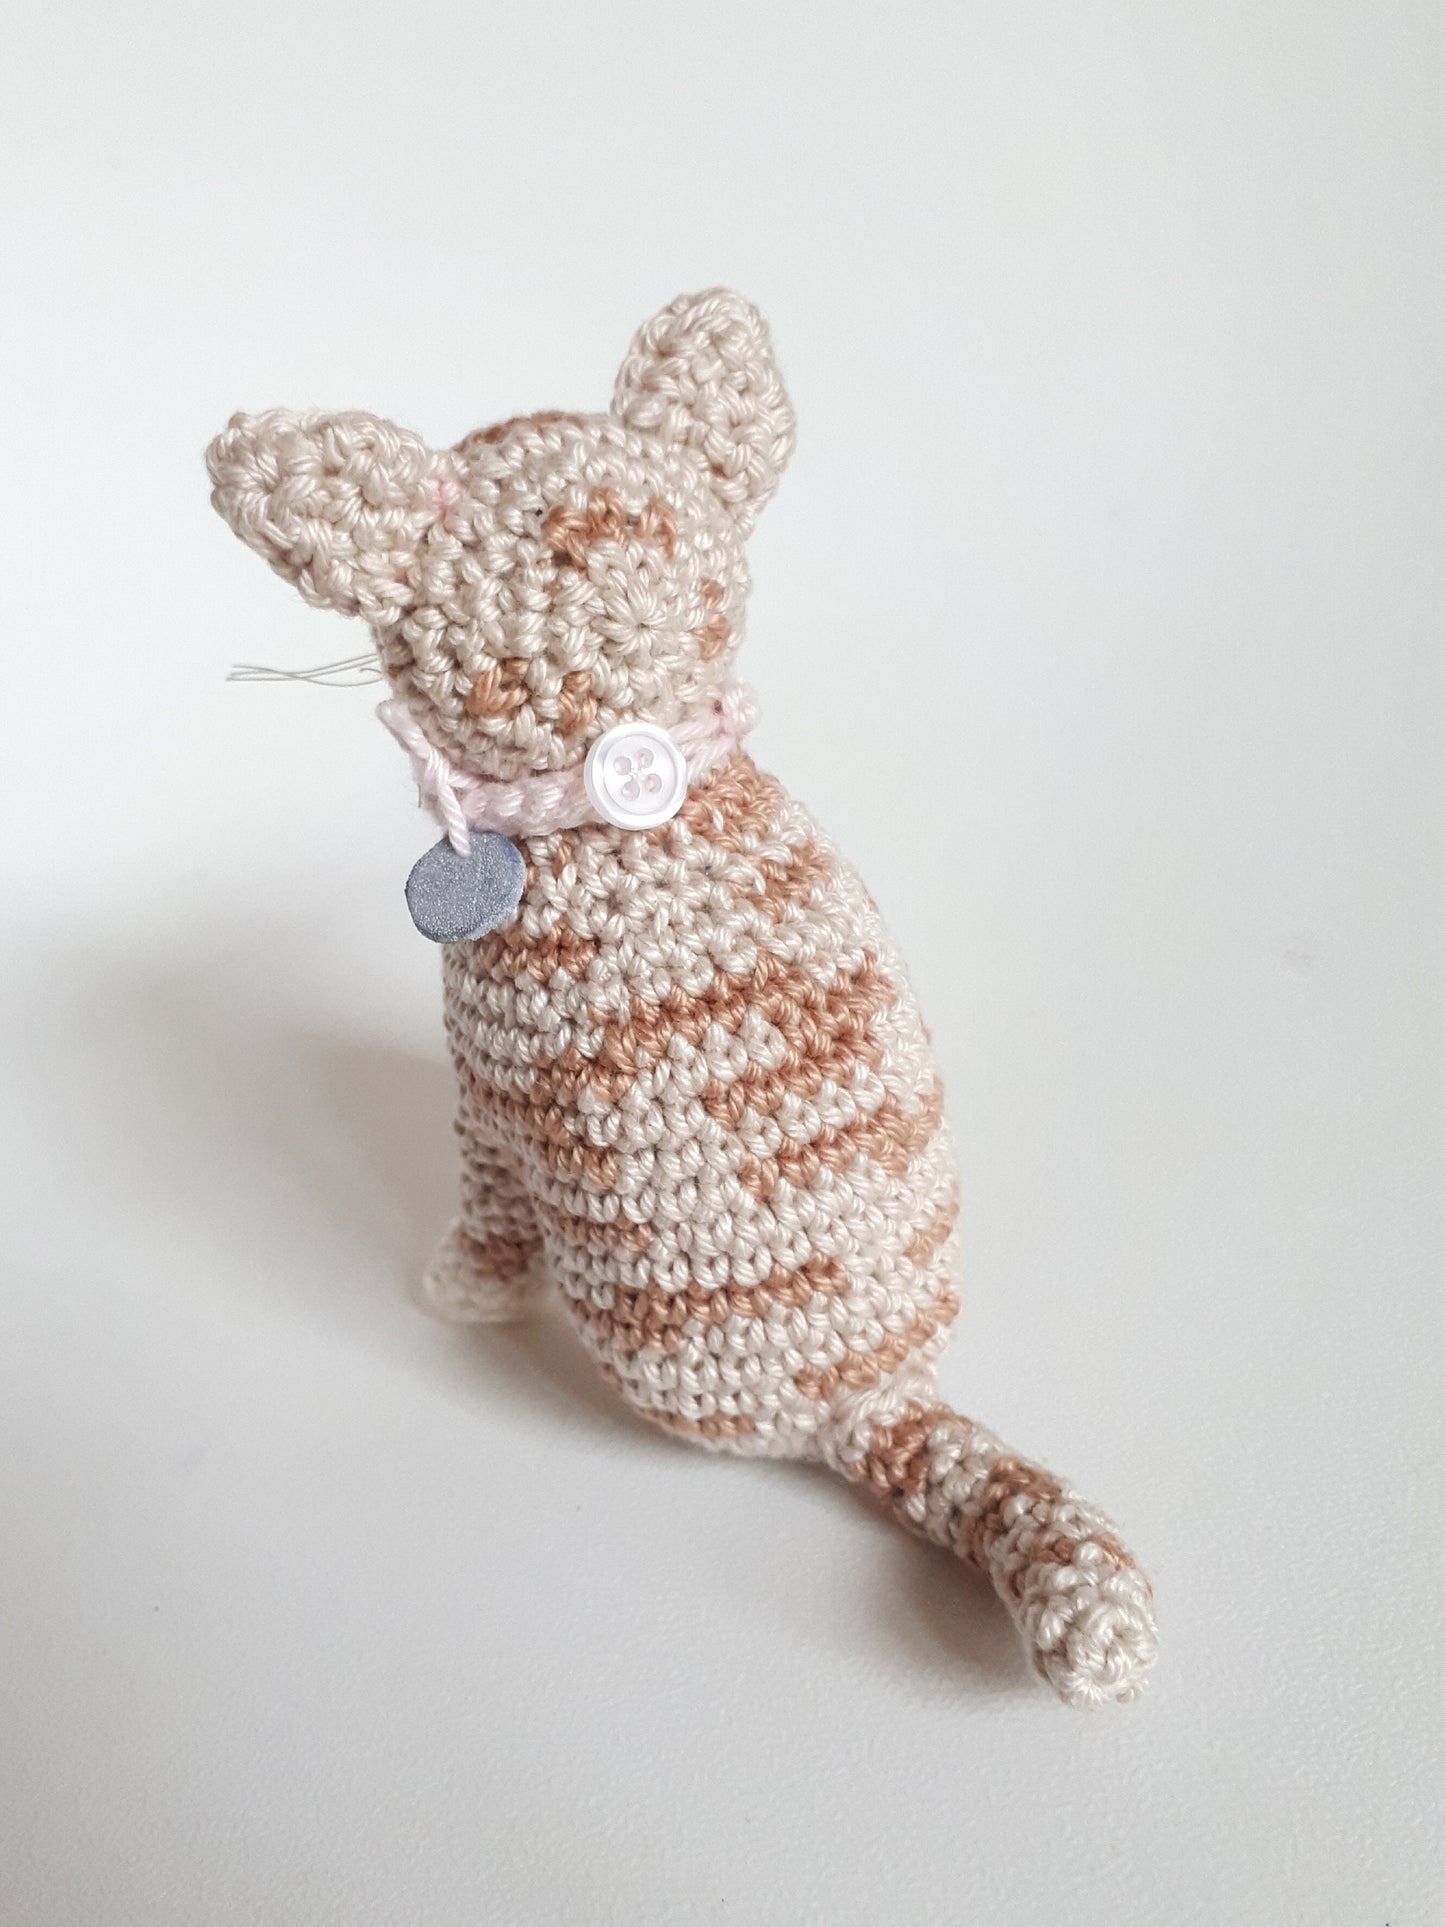 Tabby cat crochet pattern